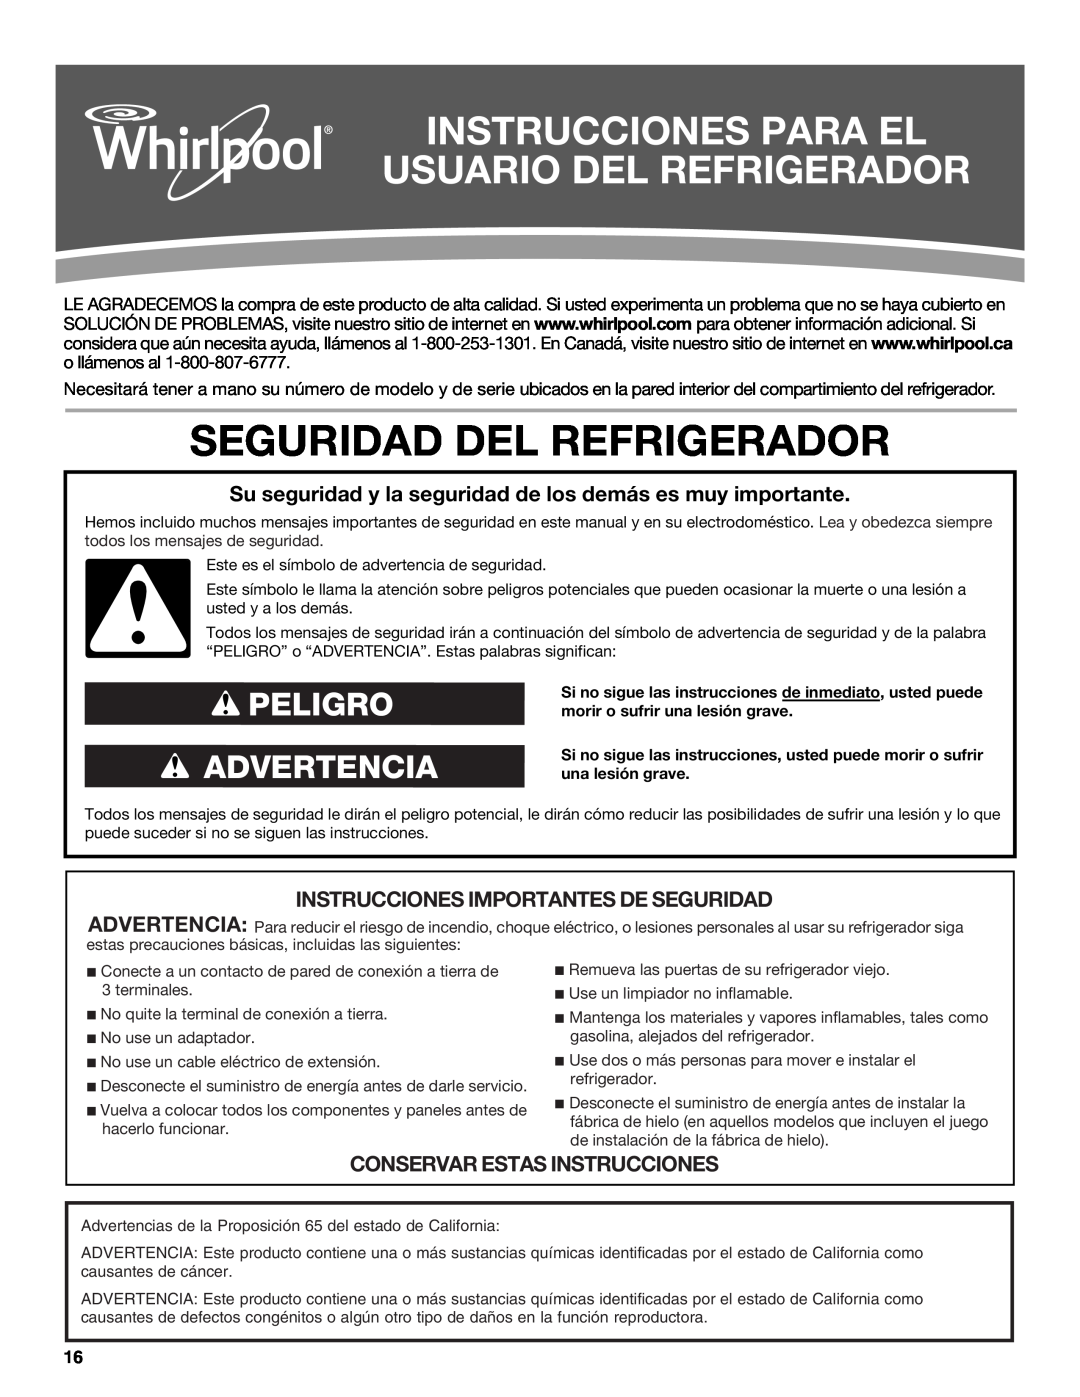 Whirlpool WRT111SFAF Instrucciones Para El Usuario Del Refrigerador, Seguridad Del Refrigerador, Peligro Advertencia 